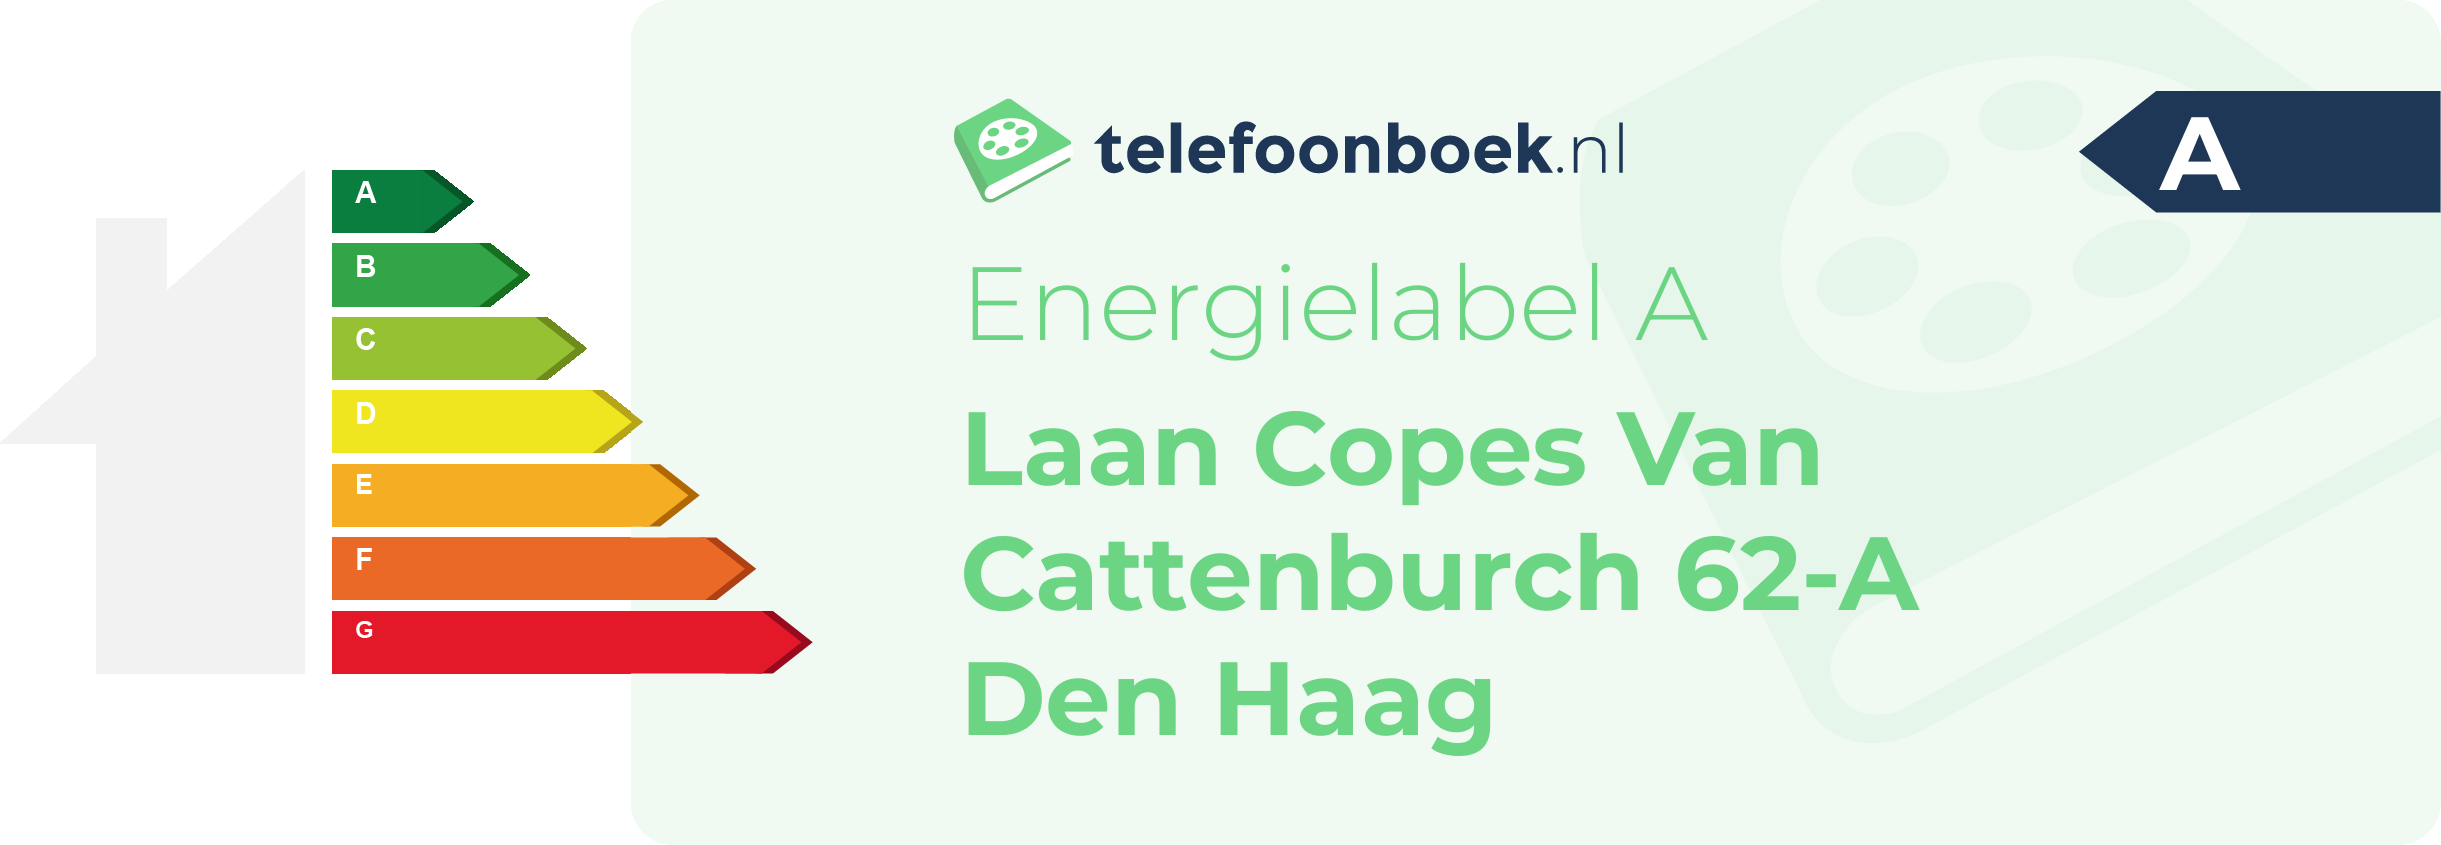 Energielabel Laan Copes Van Cattenburch 62-A Den Haag